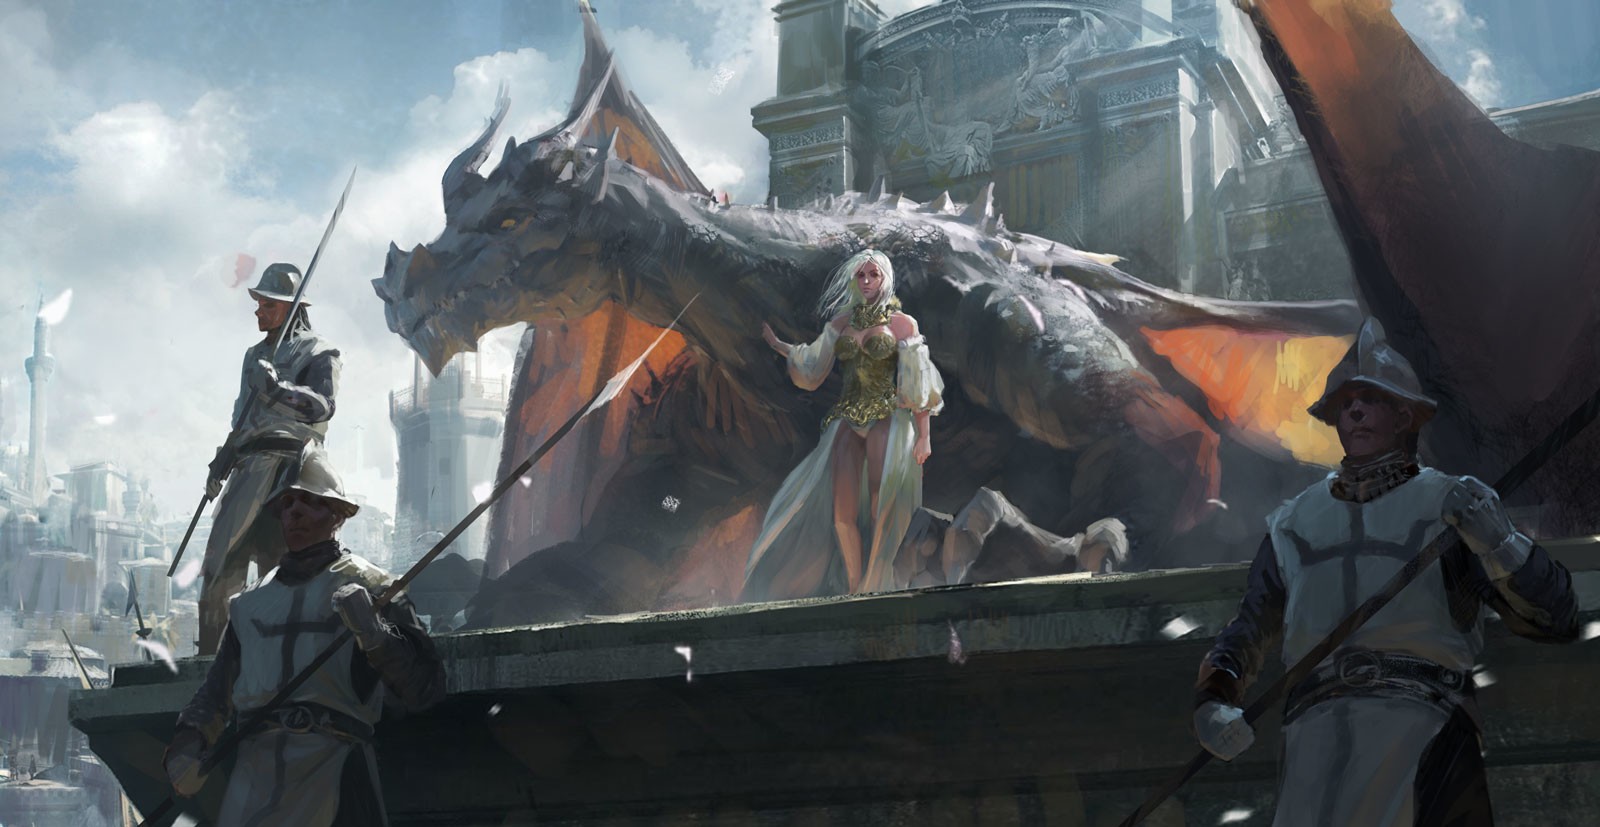 fantasy art, Dragon Wallpaper